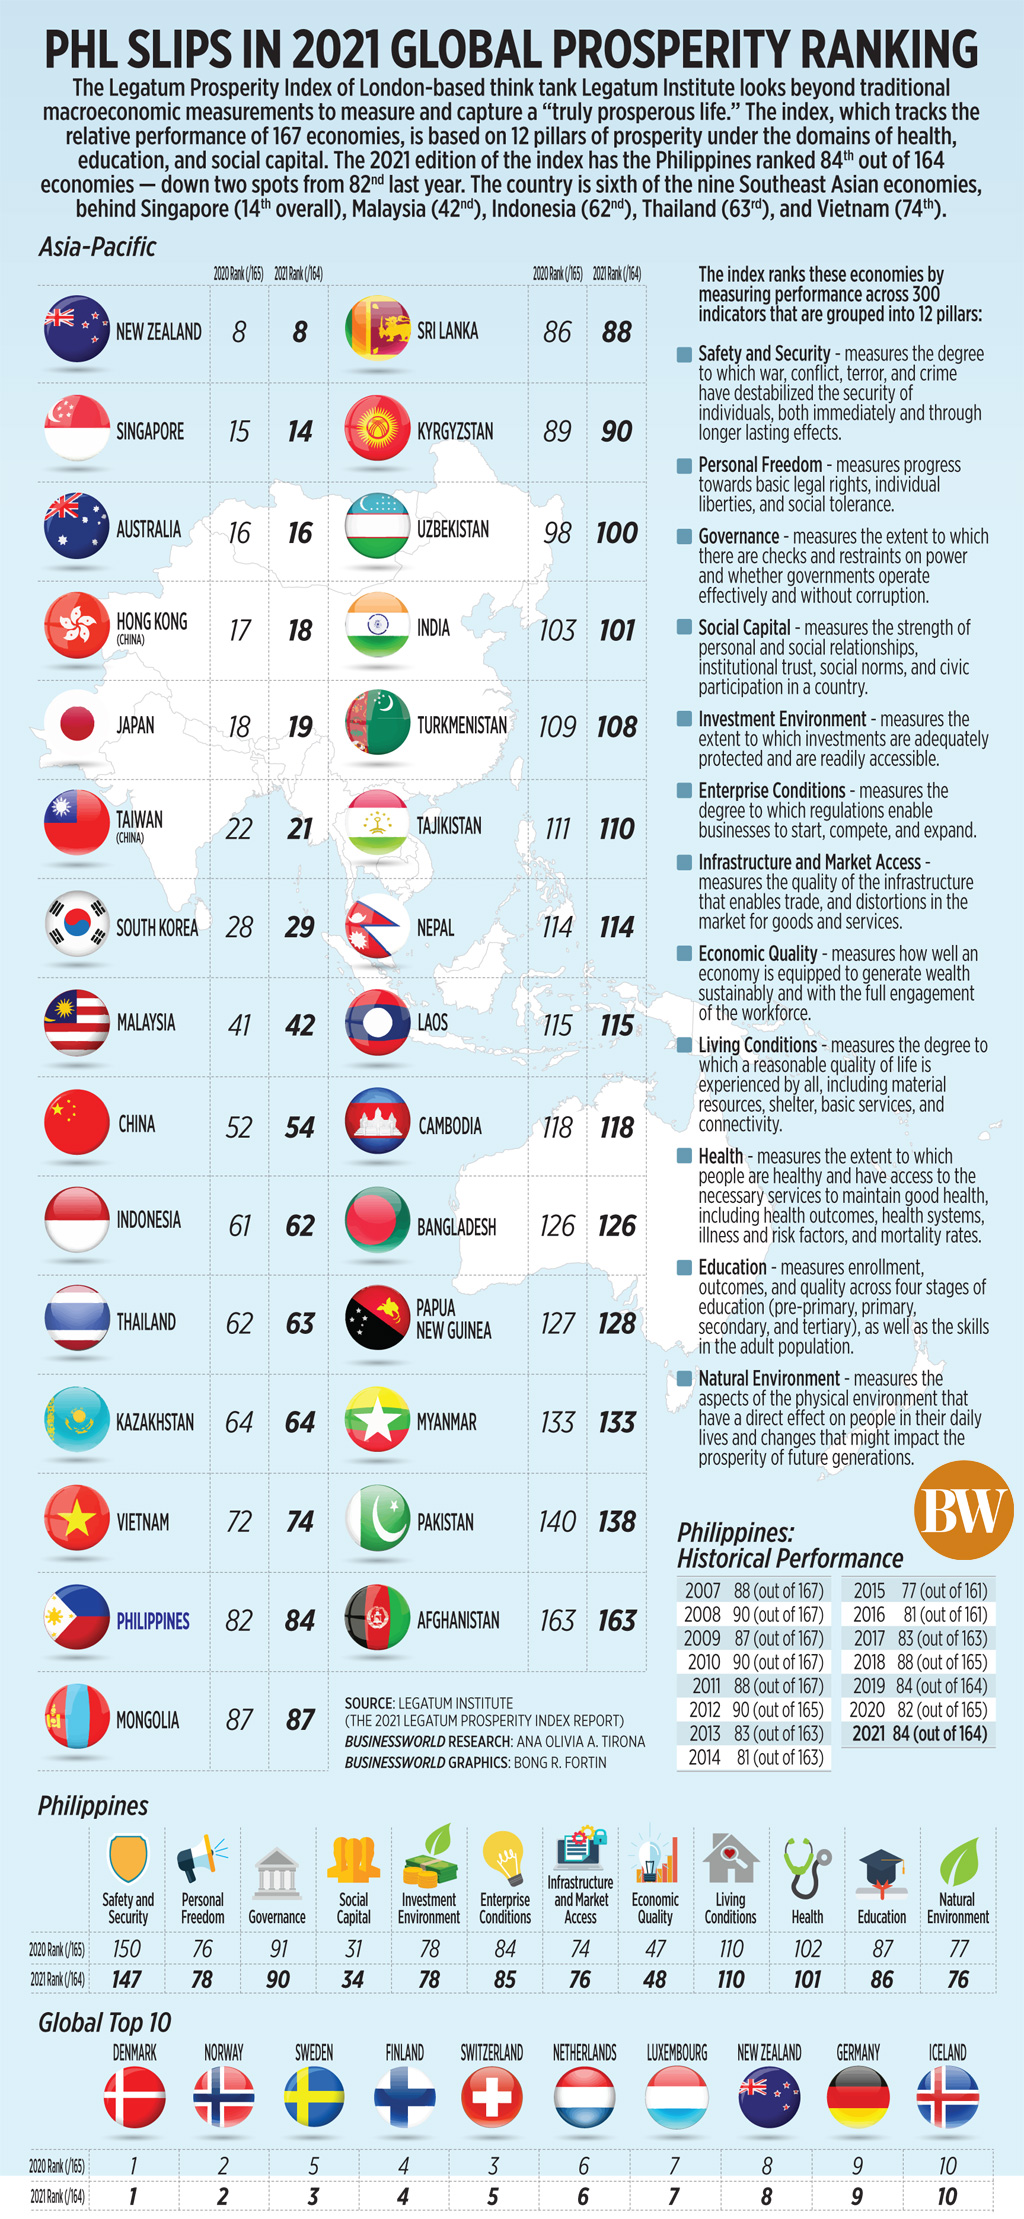 PHL slips in 2021 global prosperity ranking